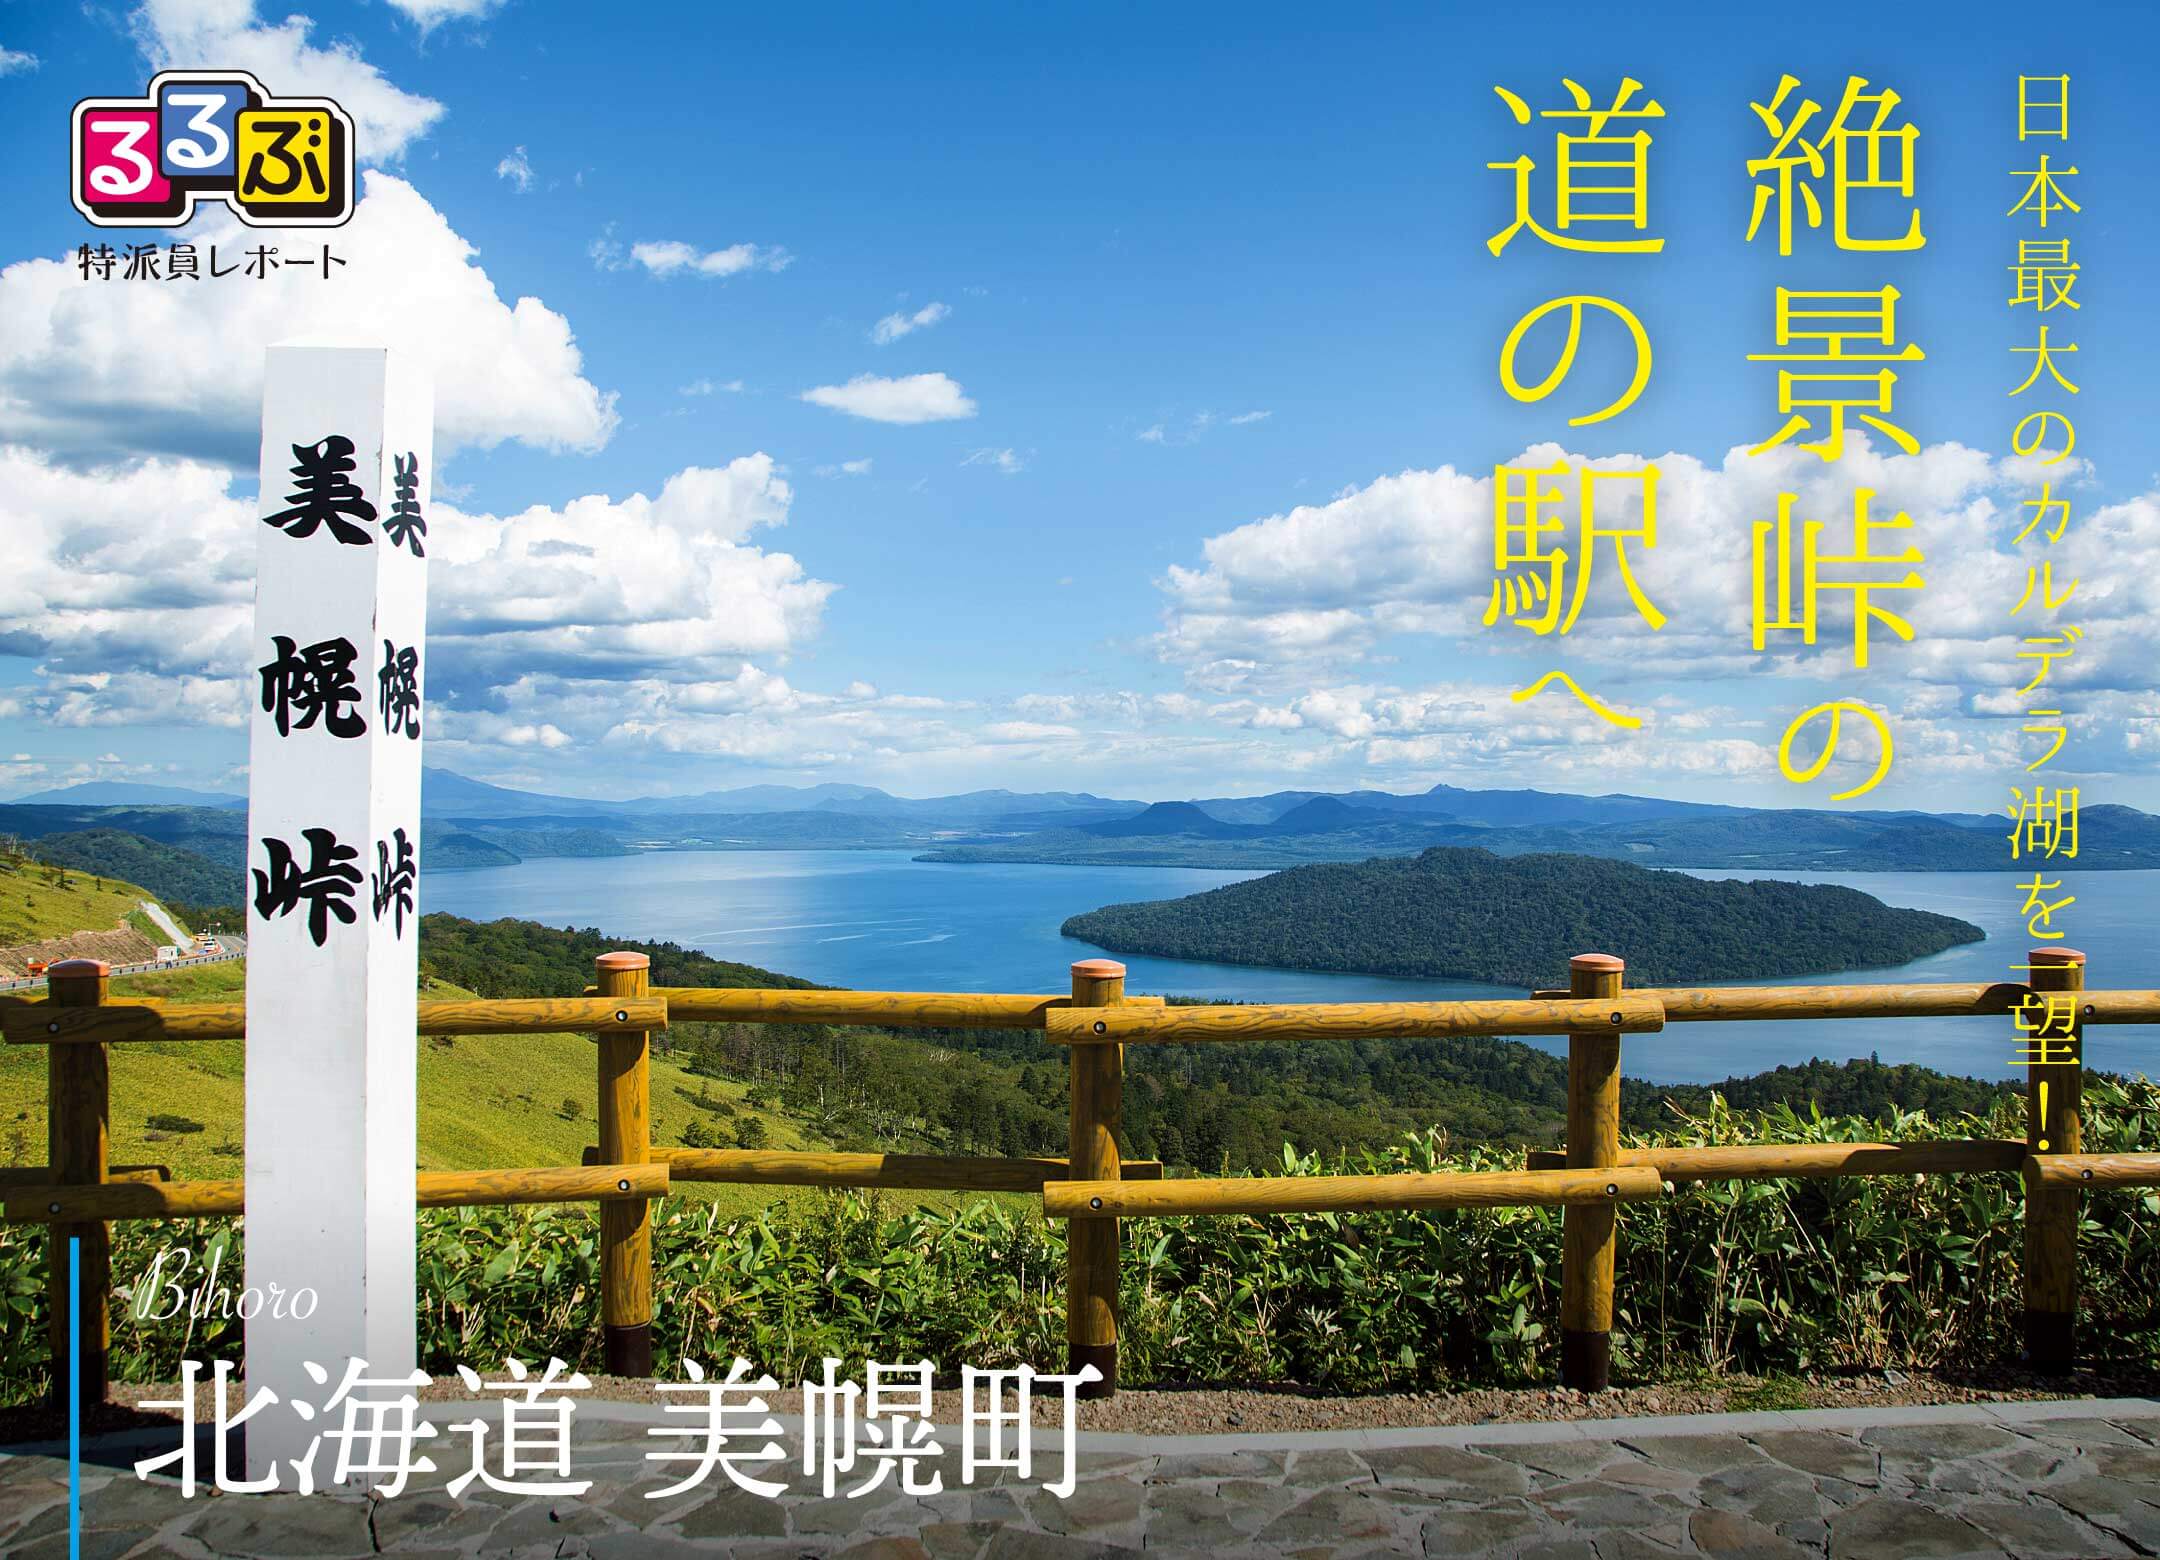 絶景峠の道の駅へ | 北海道美幌町 の旅行レポート